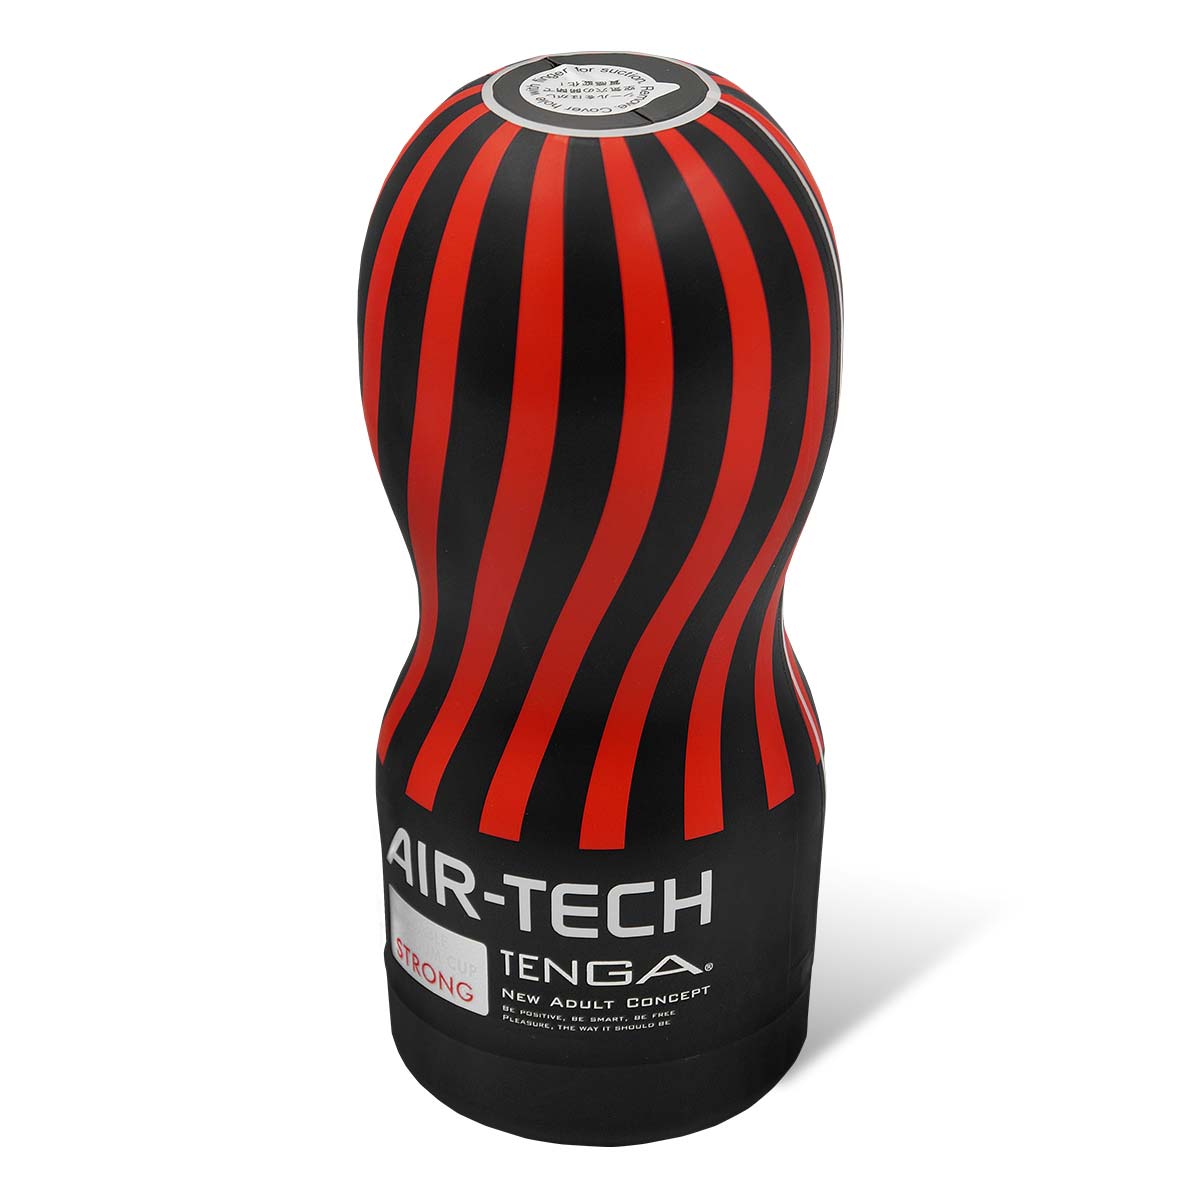 TENGA AIR-TECH Reusable Vacuum CUP STRONG-thumb_1